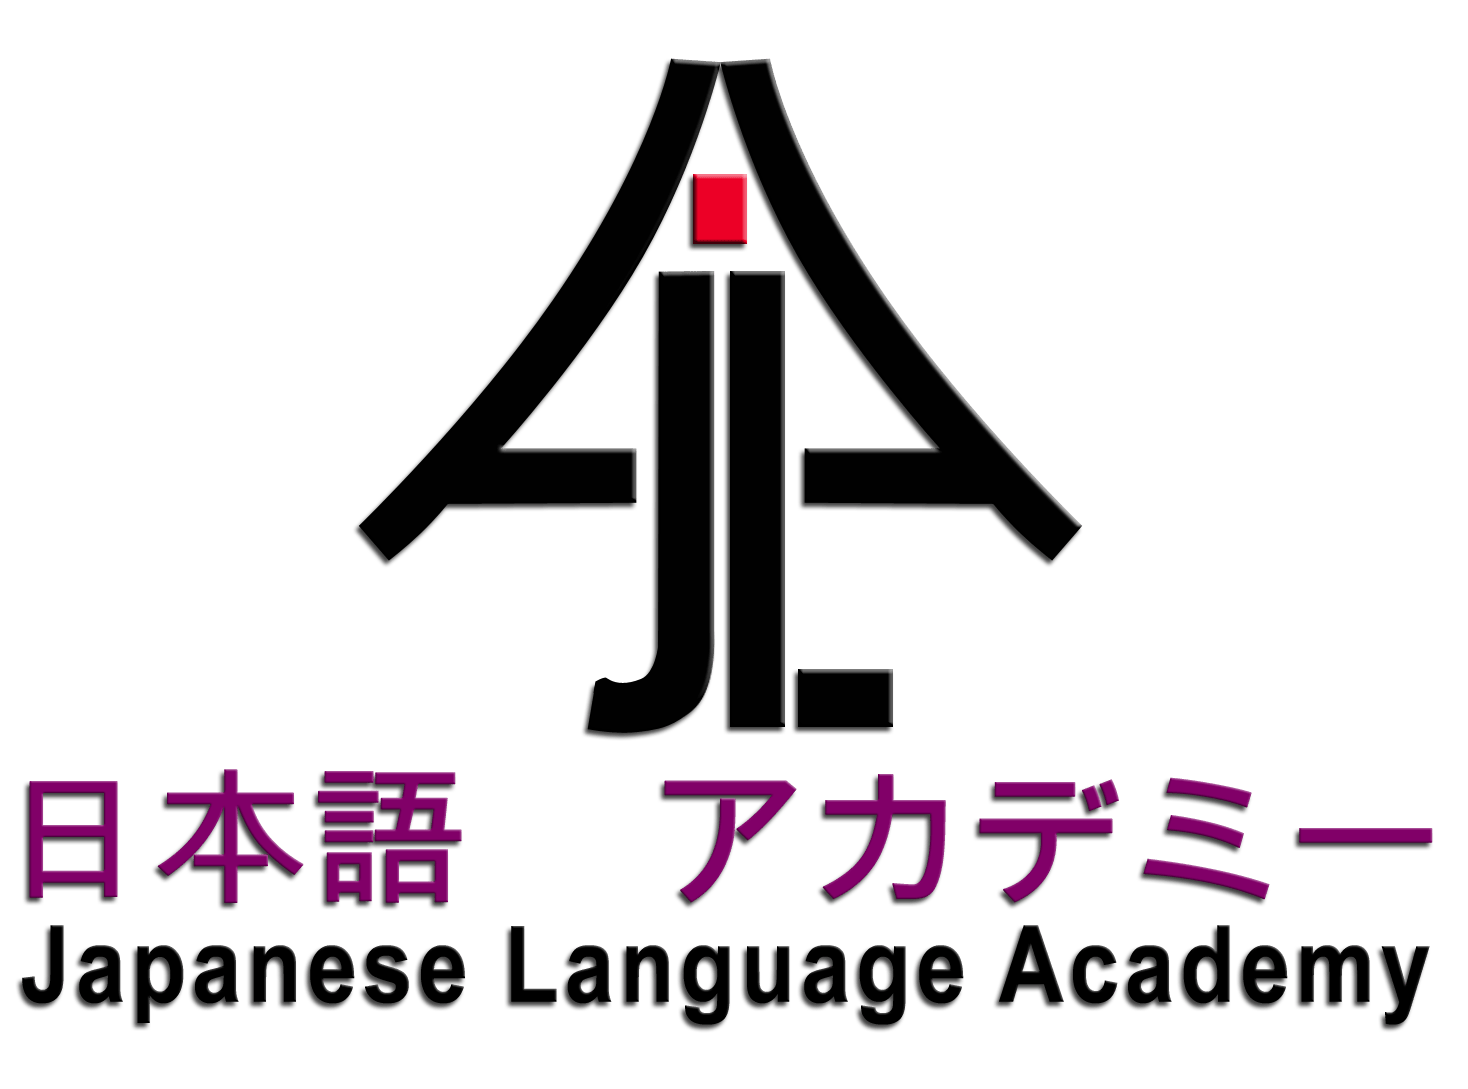 Japanese Language Academy